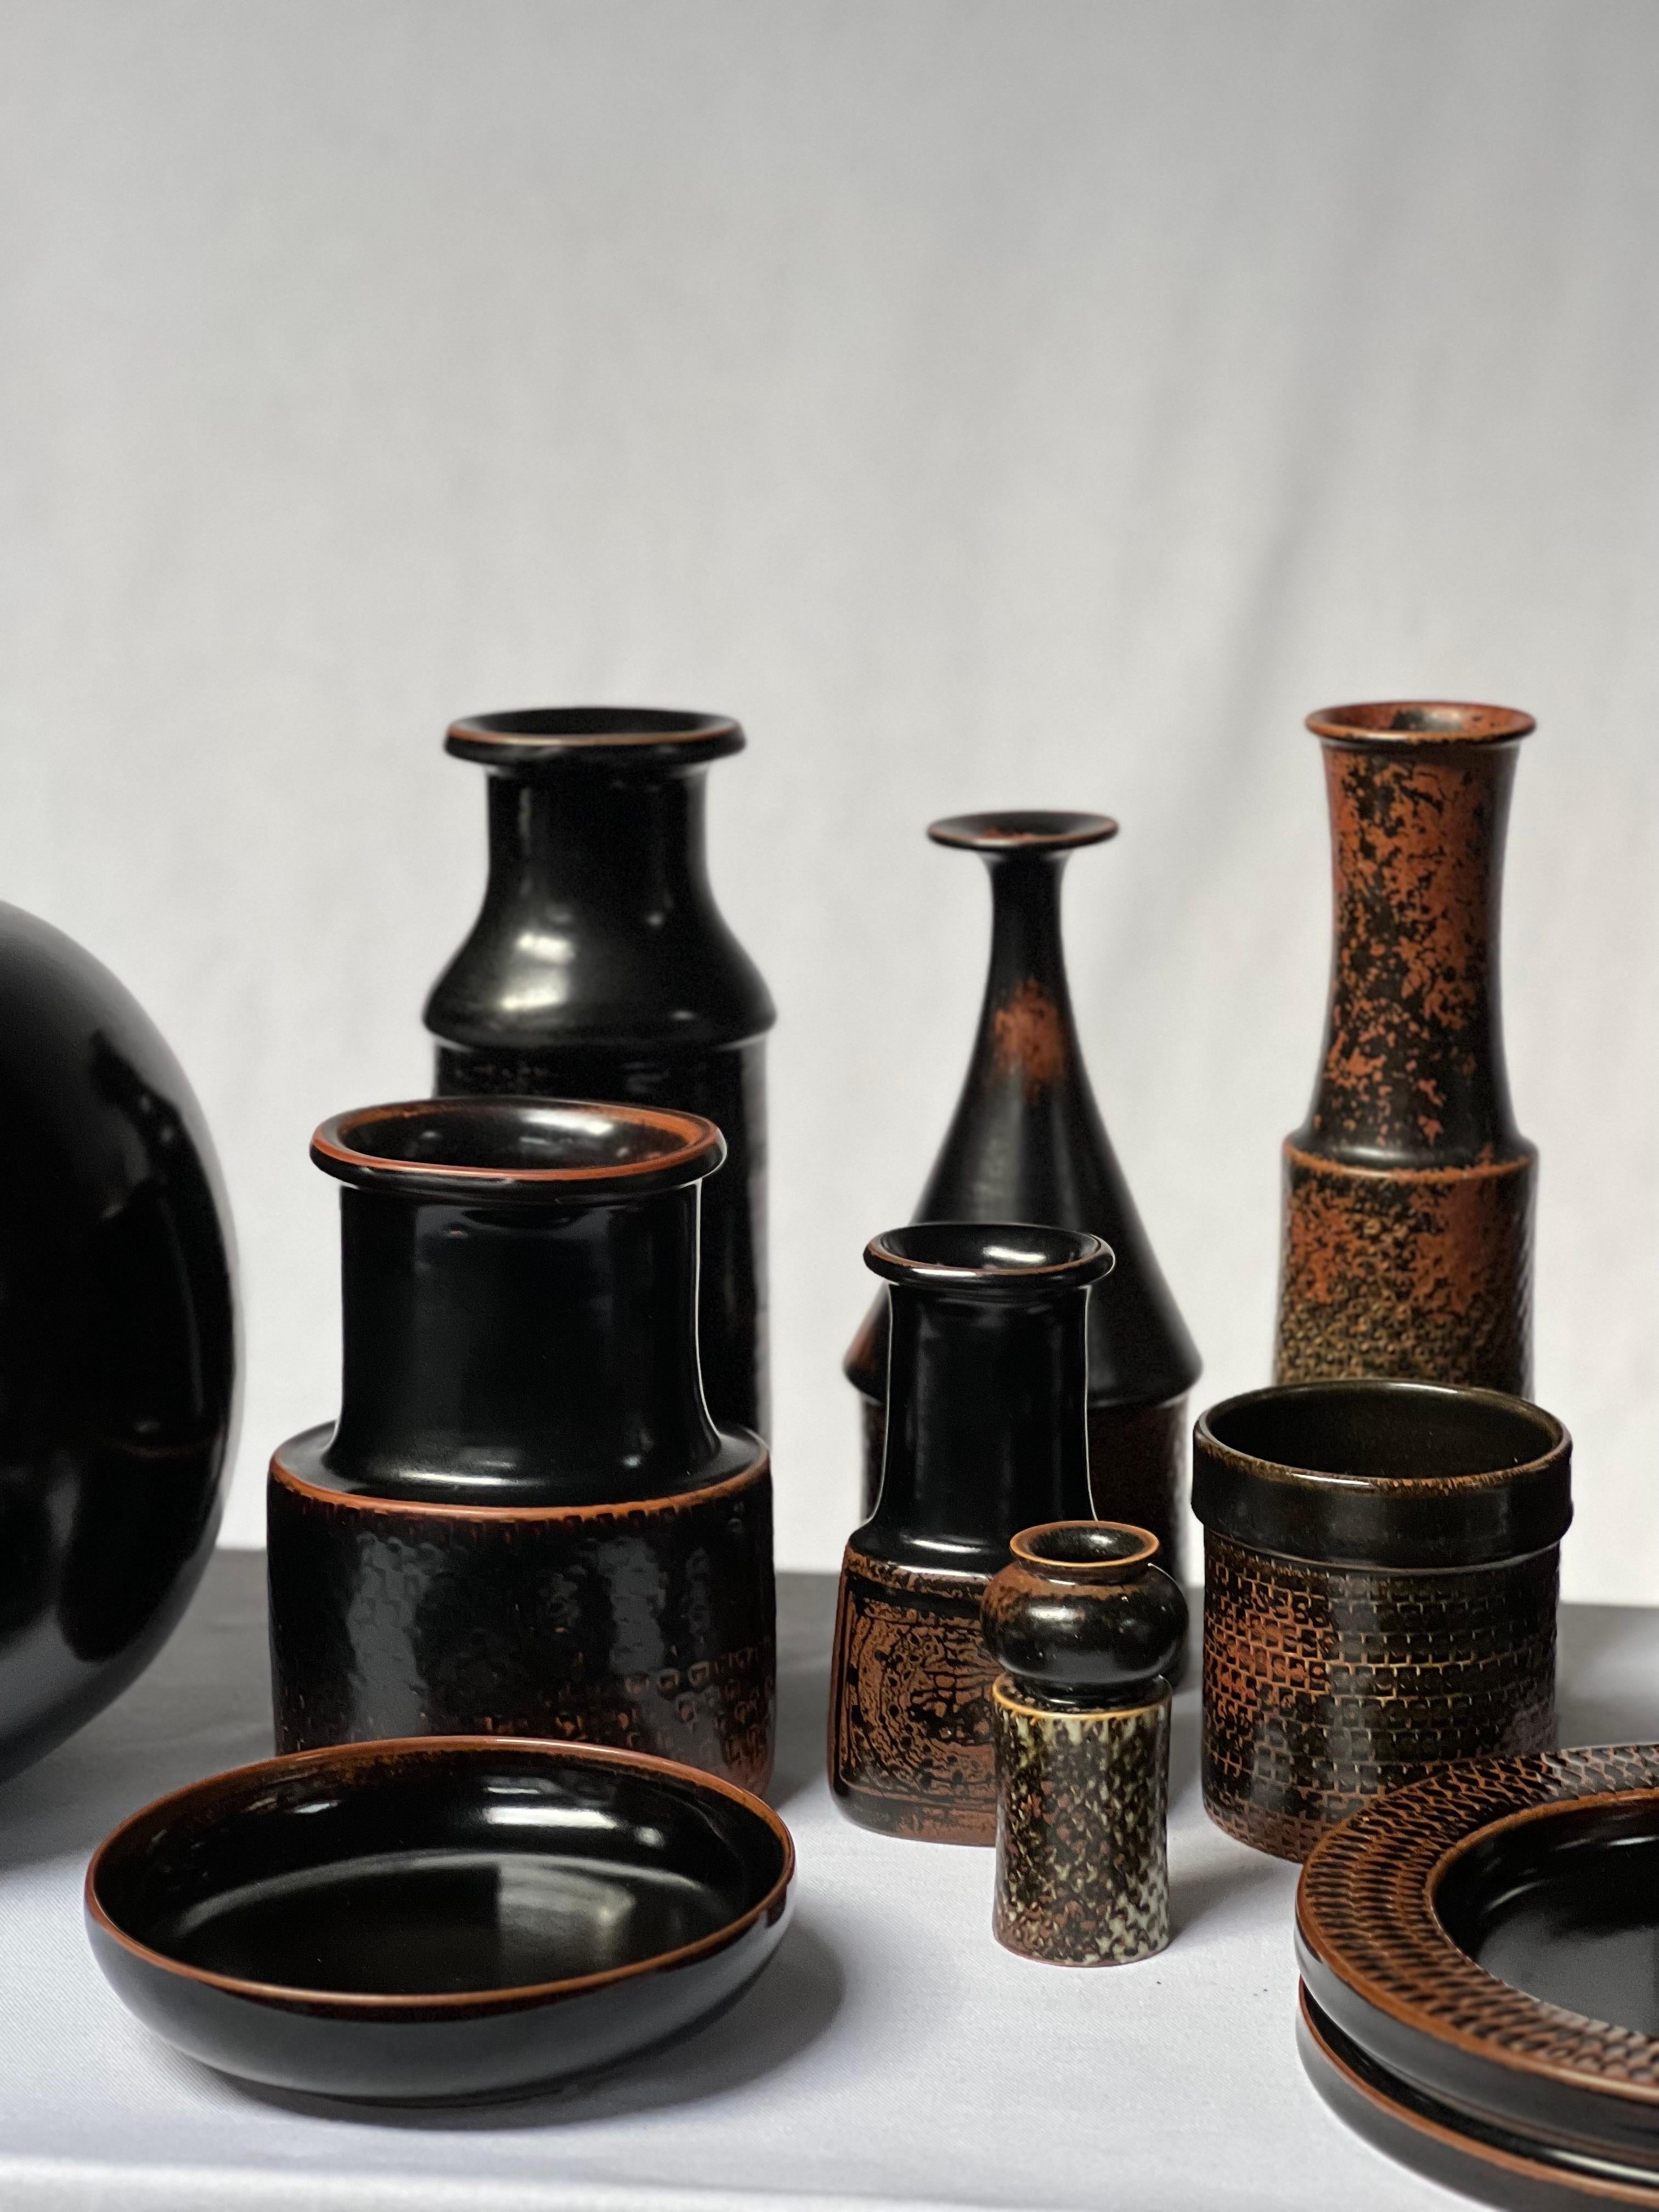 Stig Lindberg Unique Vase in black Glaze Tenmoku Made by Hand Sweden 1968 For Sale 2